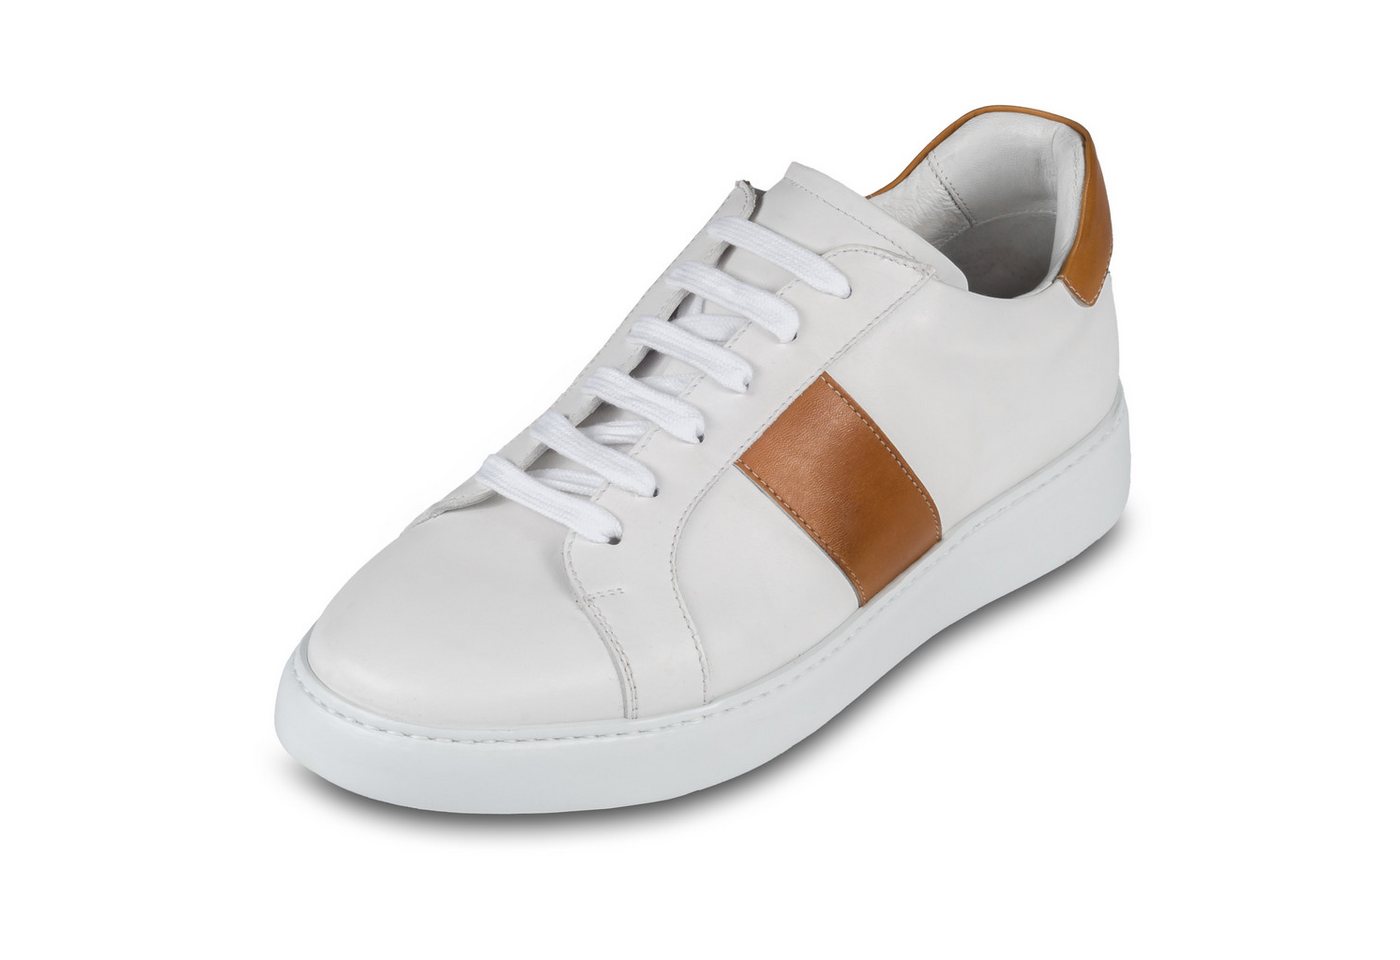 BRECOS Leder Sneaker in weiß mit cognak braunen Applikationen, handgefertigt Sneaker von BRECOS